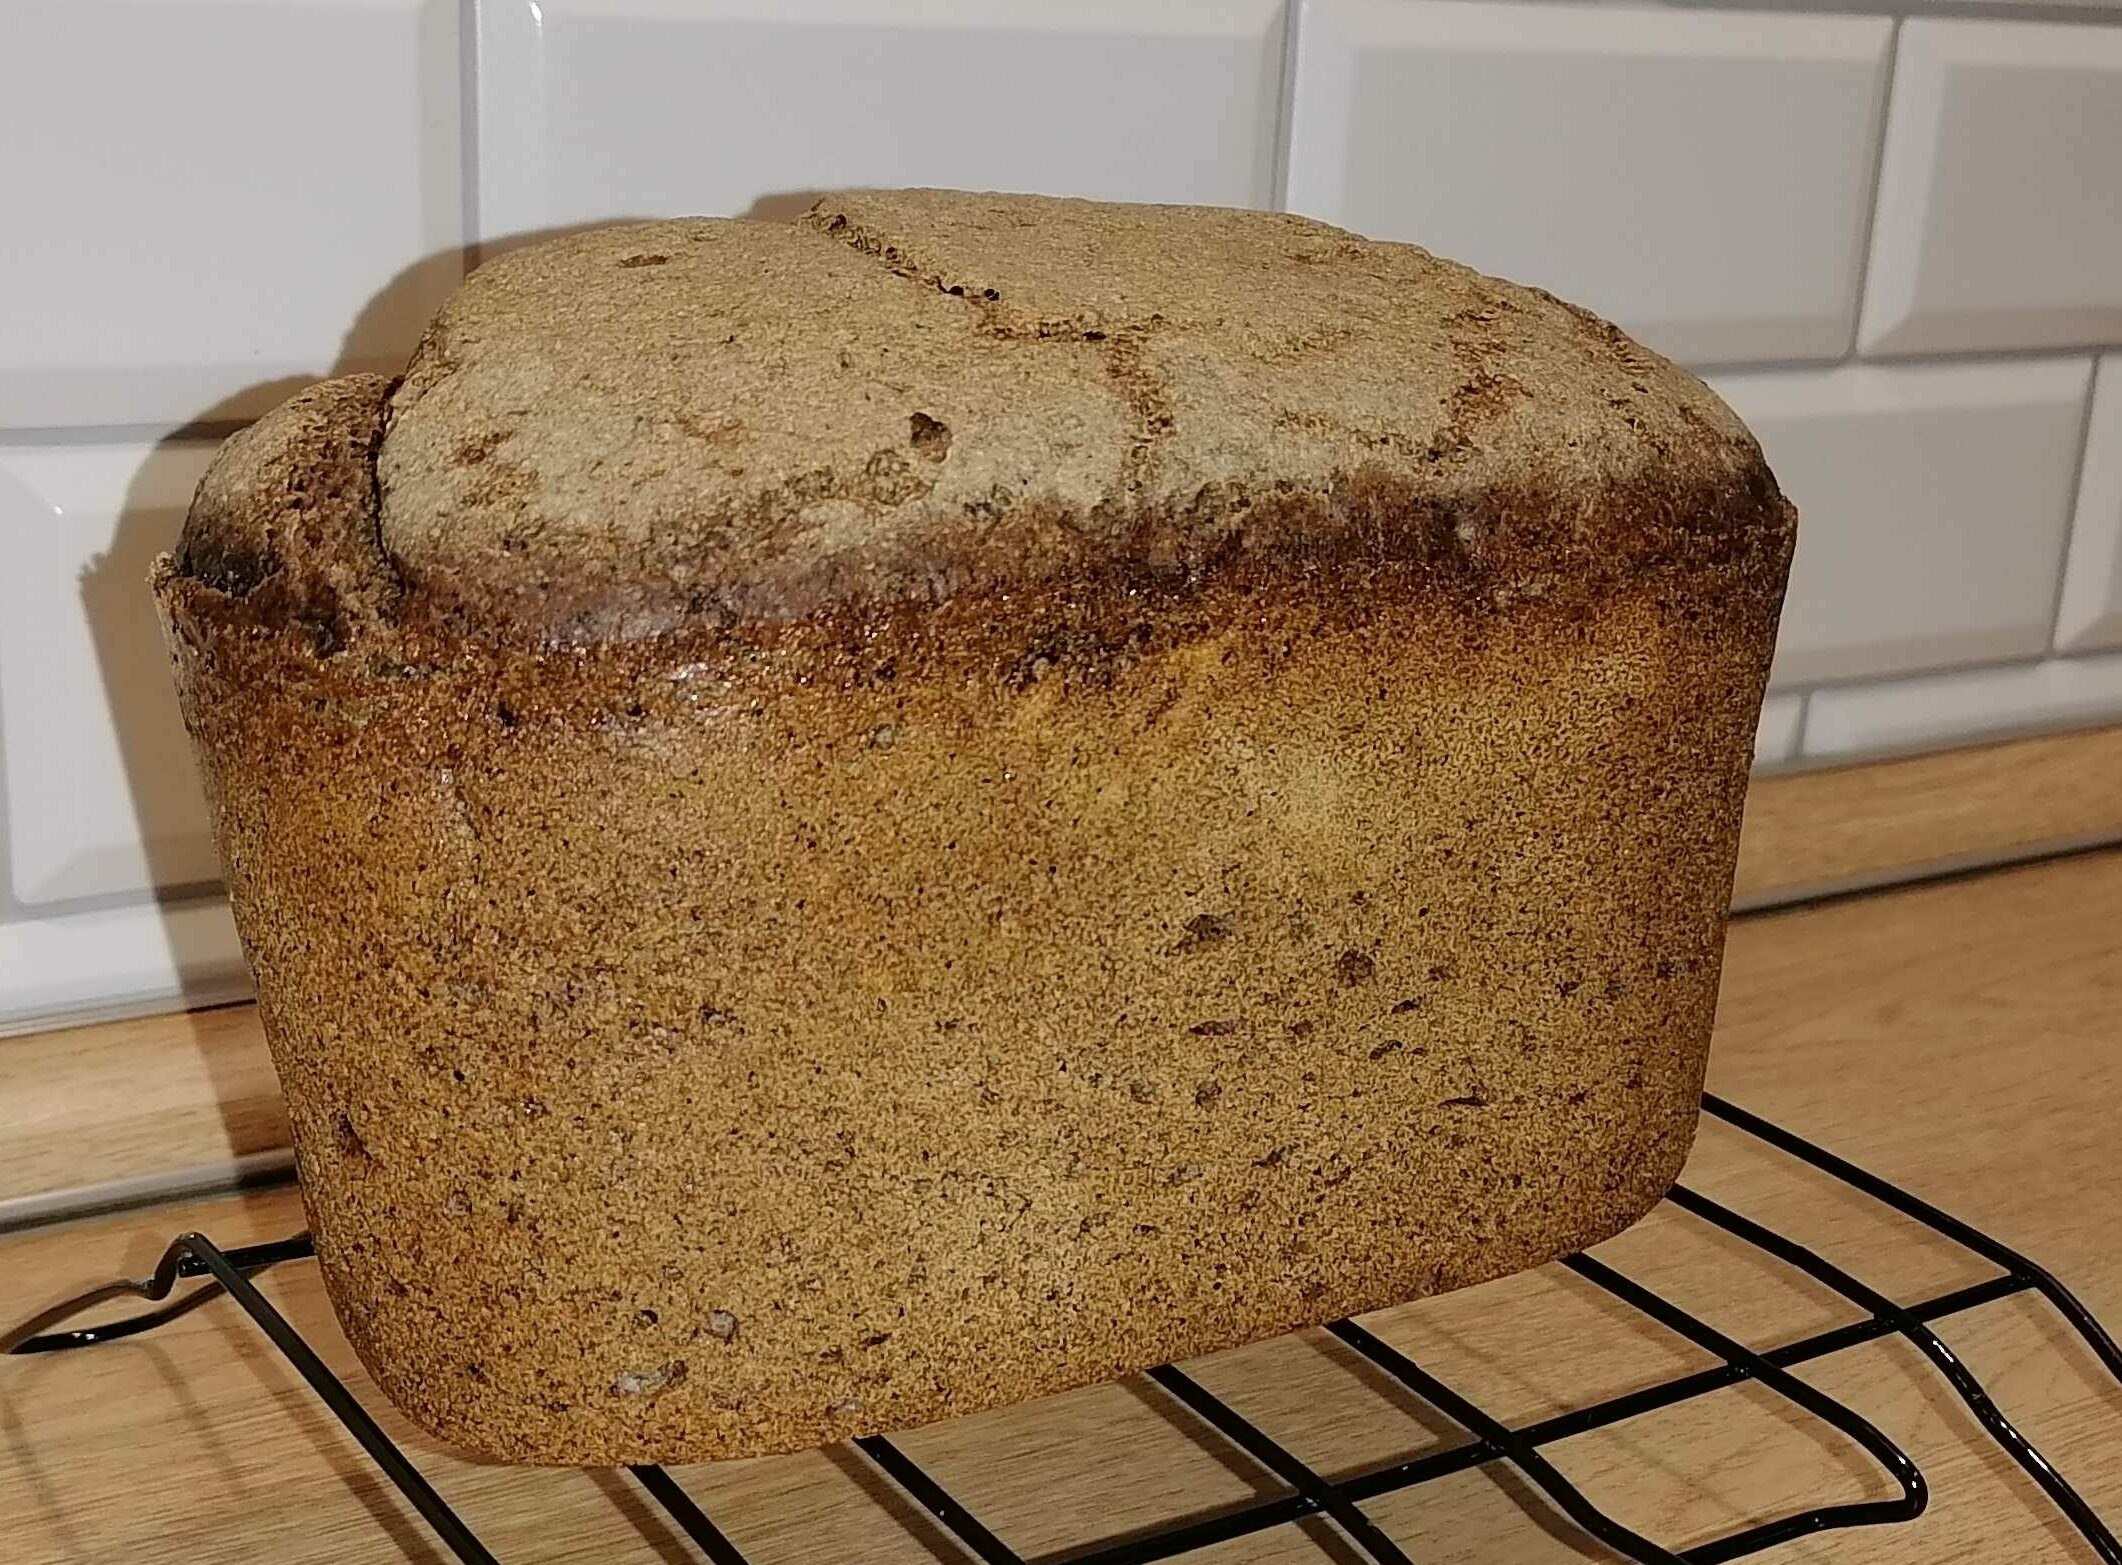 Рецепт ржаного хлеба на закваске в хлебопечке. Бездрожжевой хлеб в хлебопечке Panasonic. Солодовый хлеб. Ржаной хлеб на закваске. Солодовый хлеб на закваске.